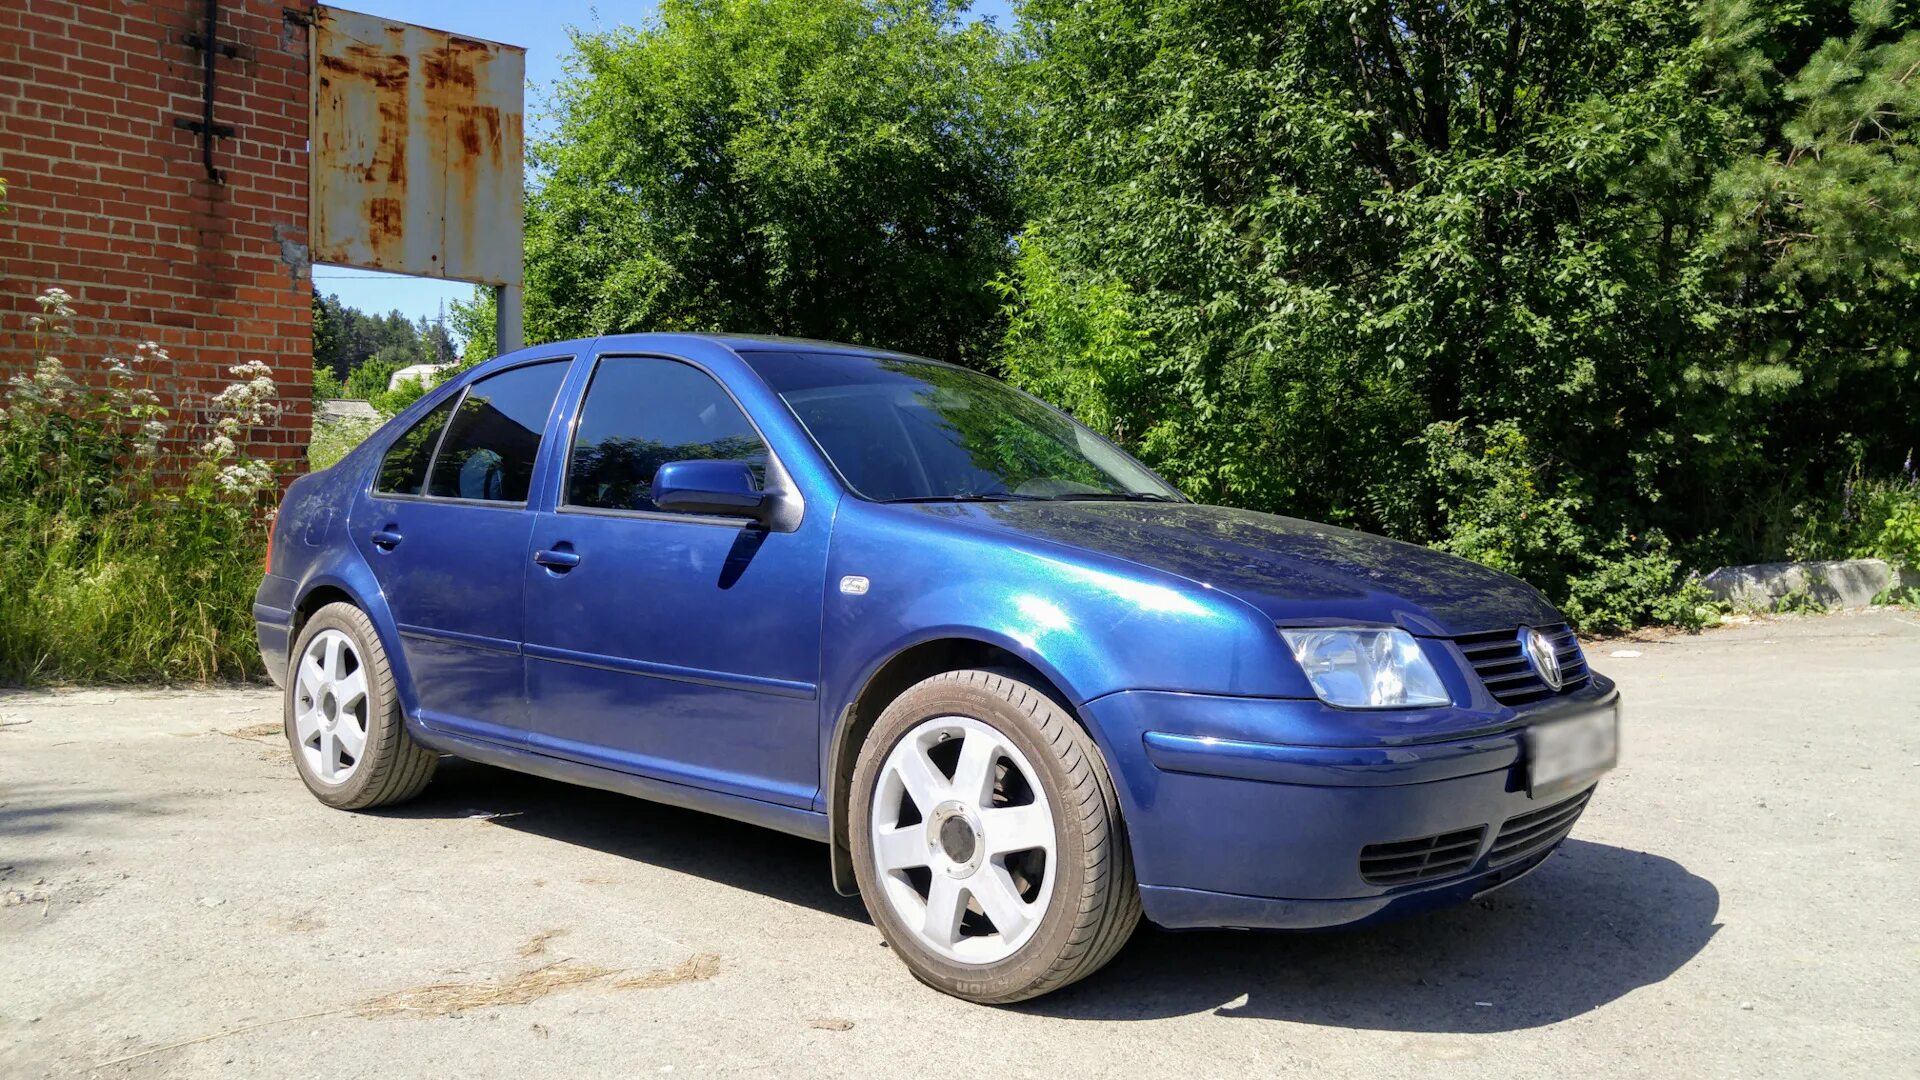 VW Bora 2.3. Фольксваген Бора 1999 года синий цвет. Ly5z. Краска ly5z.